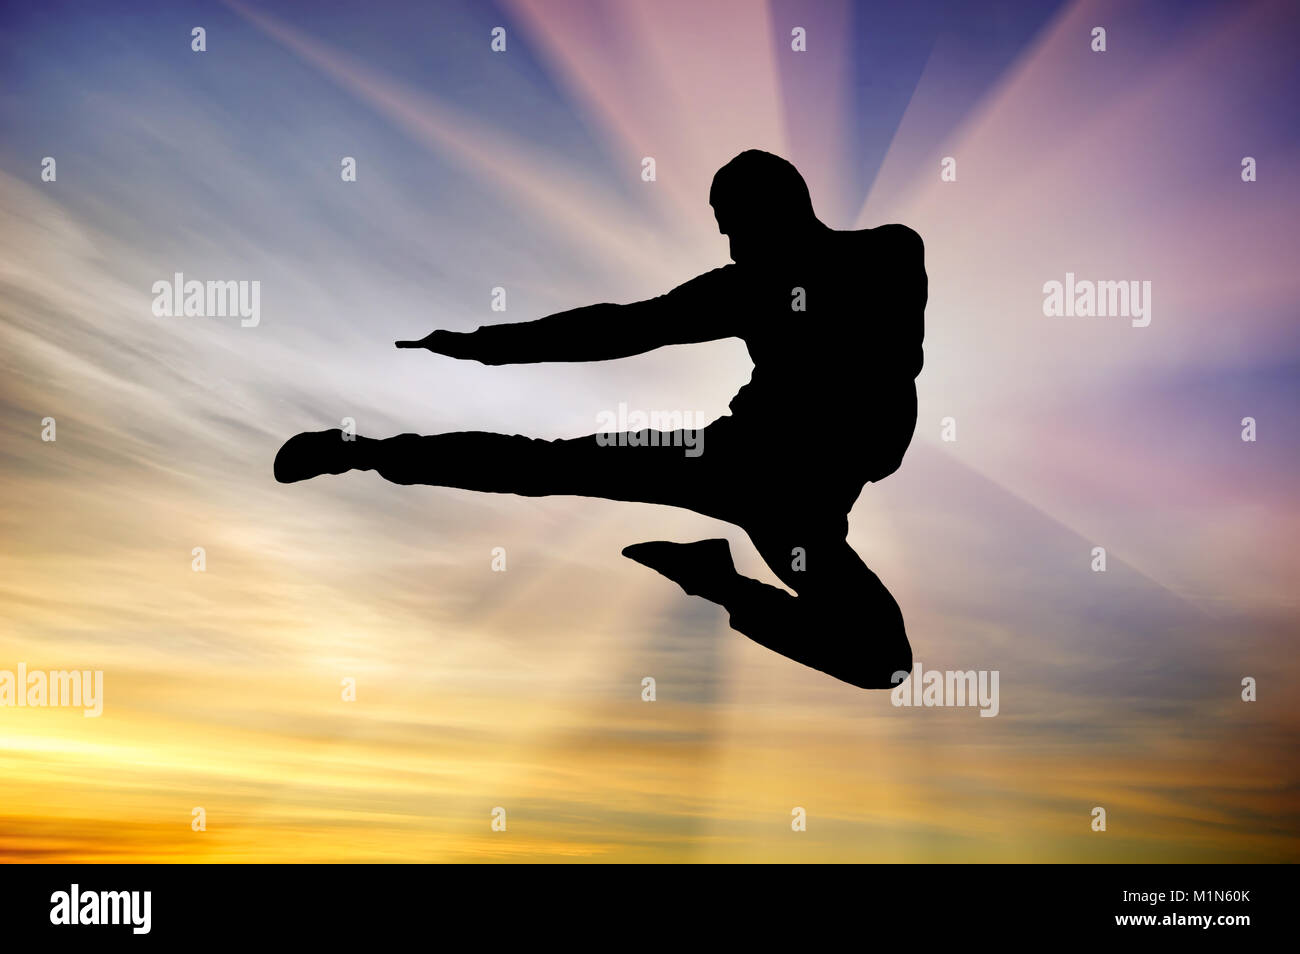 Silueta de à hombre volando patada en el cielo del atardecer de fondo. Composición de artes marciales. Foto de stock